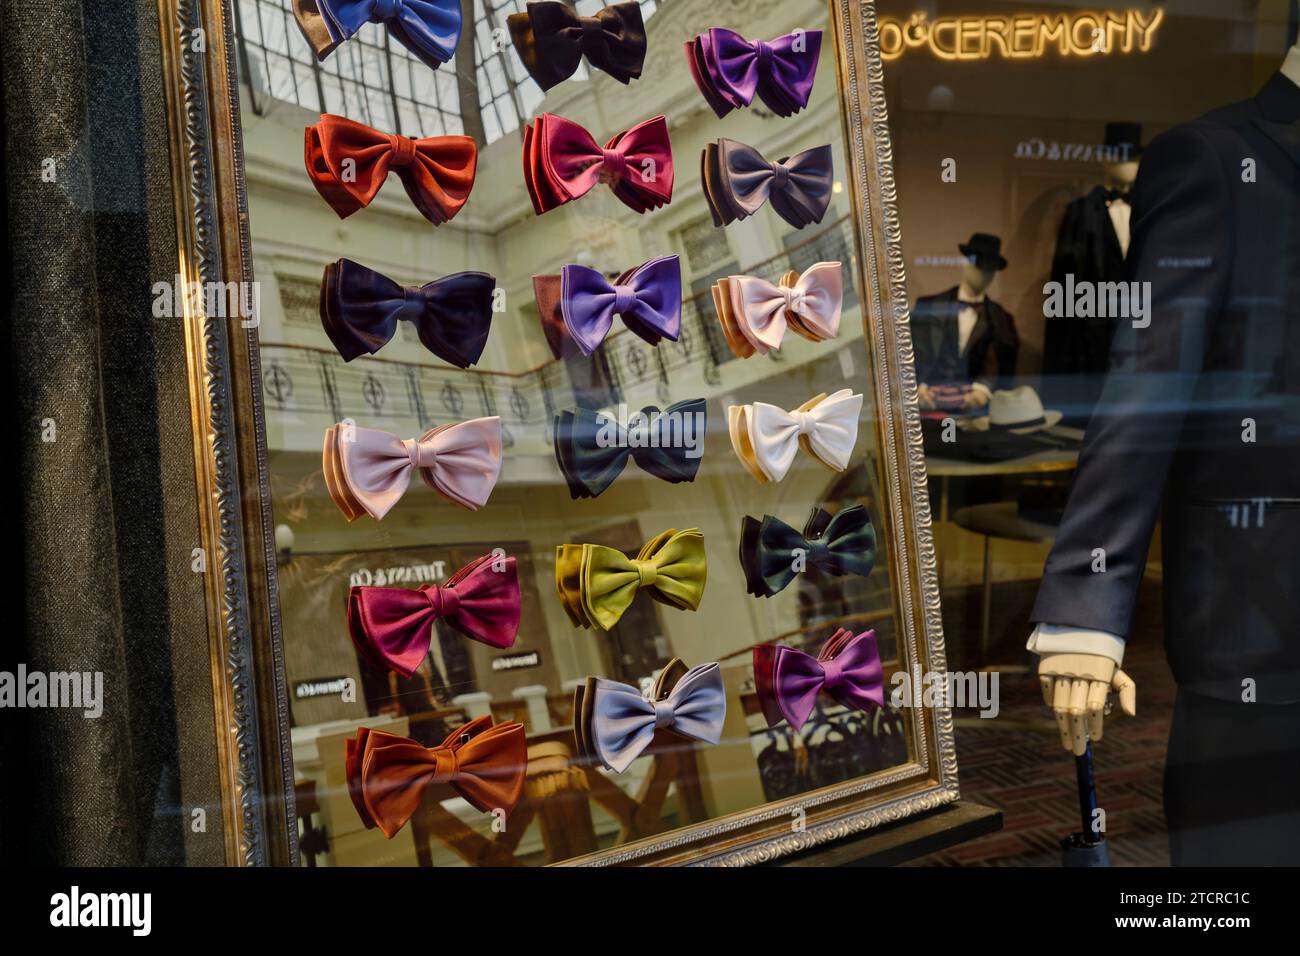 Collection colorée de noeuds papillon haut de gamme affichés dans la vitrine du passage Petrovsky, grand magasin de luxe. Moscou, Russie. Banque D'Images